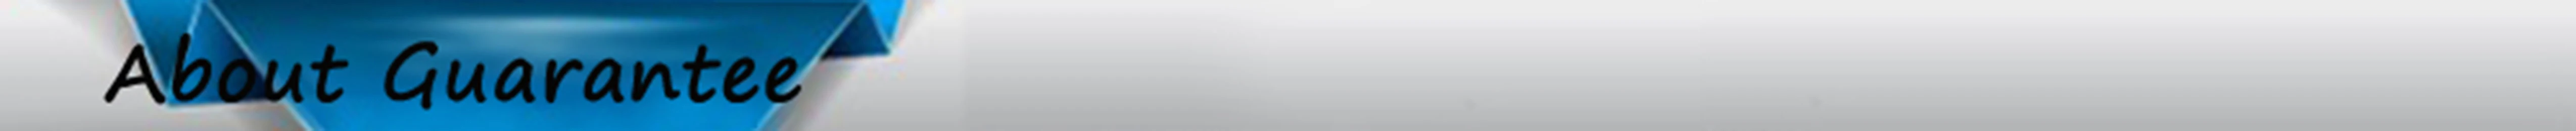 Многоцветный светодиодный Рок-светильник s комплект для автомобиля грузовика ATV UTV каяк Polaris RZR внедорожник Лодка 4 стручки с телефоном приложение пульт дистанционного управления светильник